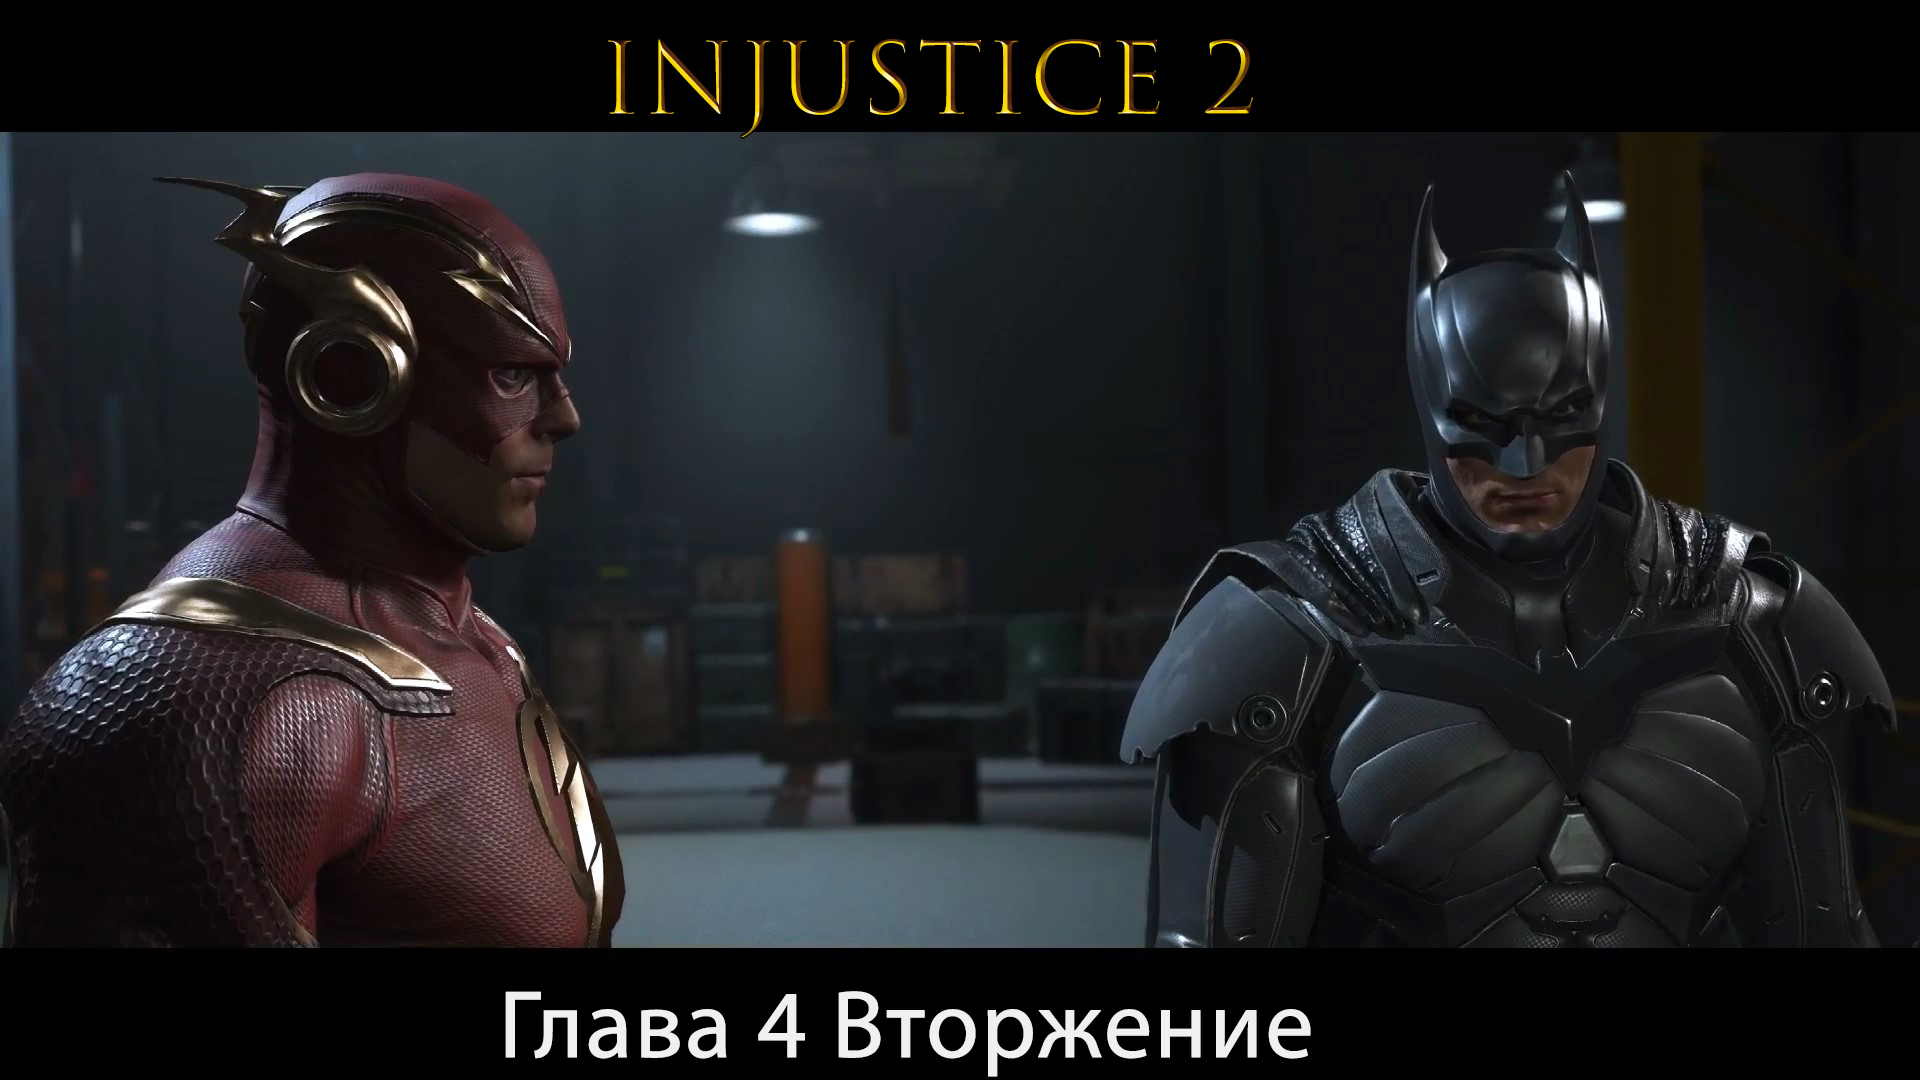 Injustice 2 - Глава 4 Вторжение (Сюжет) (Gameplay)